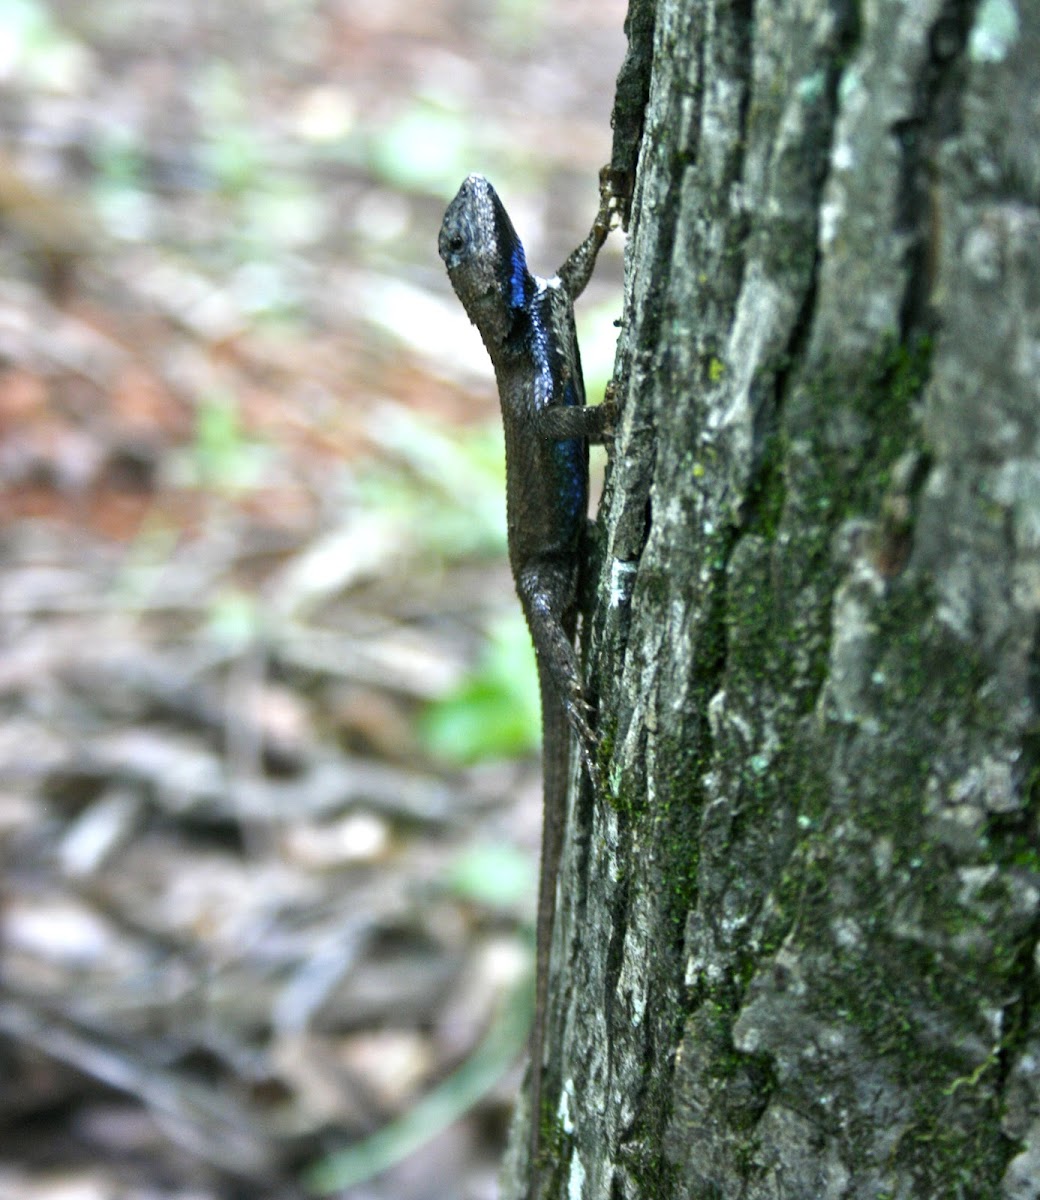 Eastern Fence Lizard, male